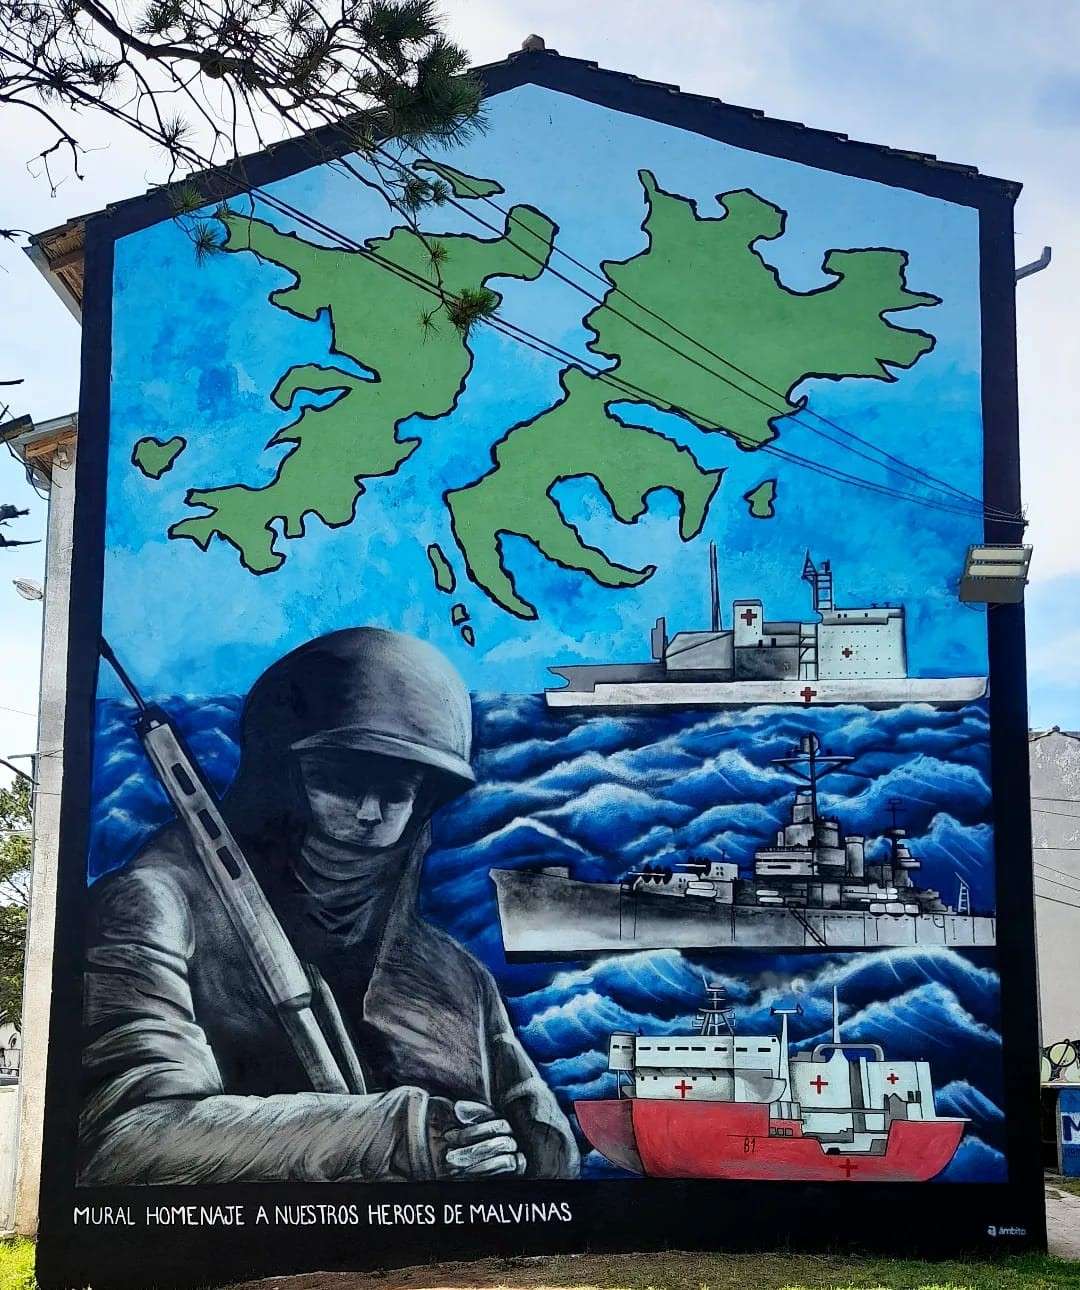 Inaugurarán otro mural en homenaje a los héroes de Malvinas